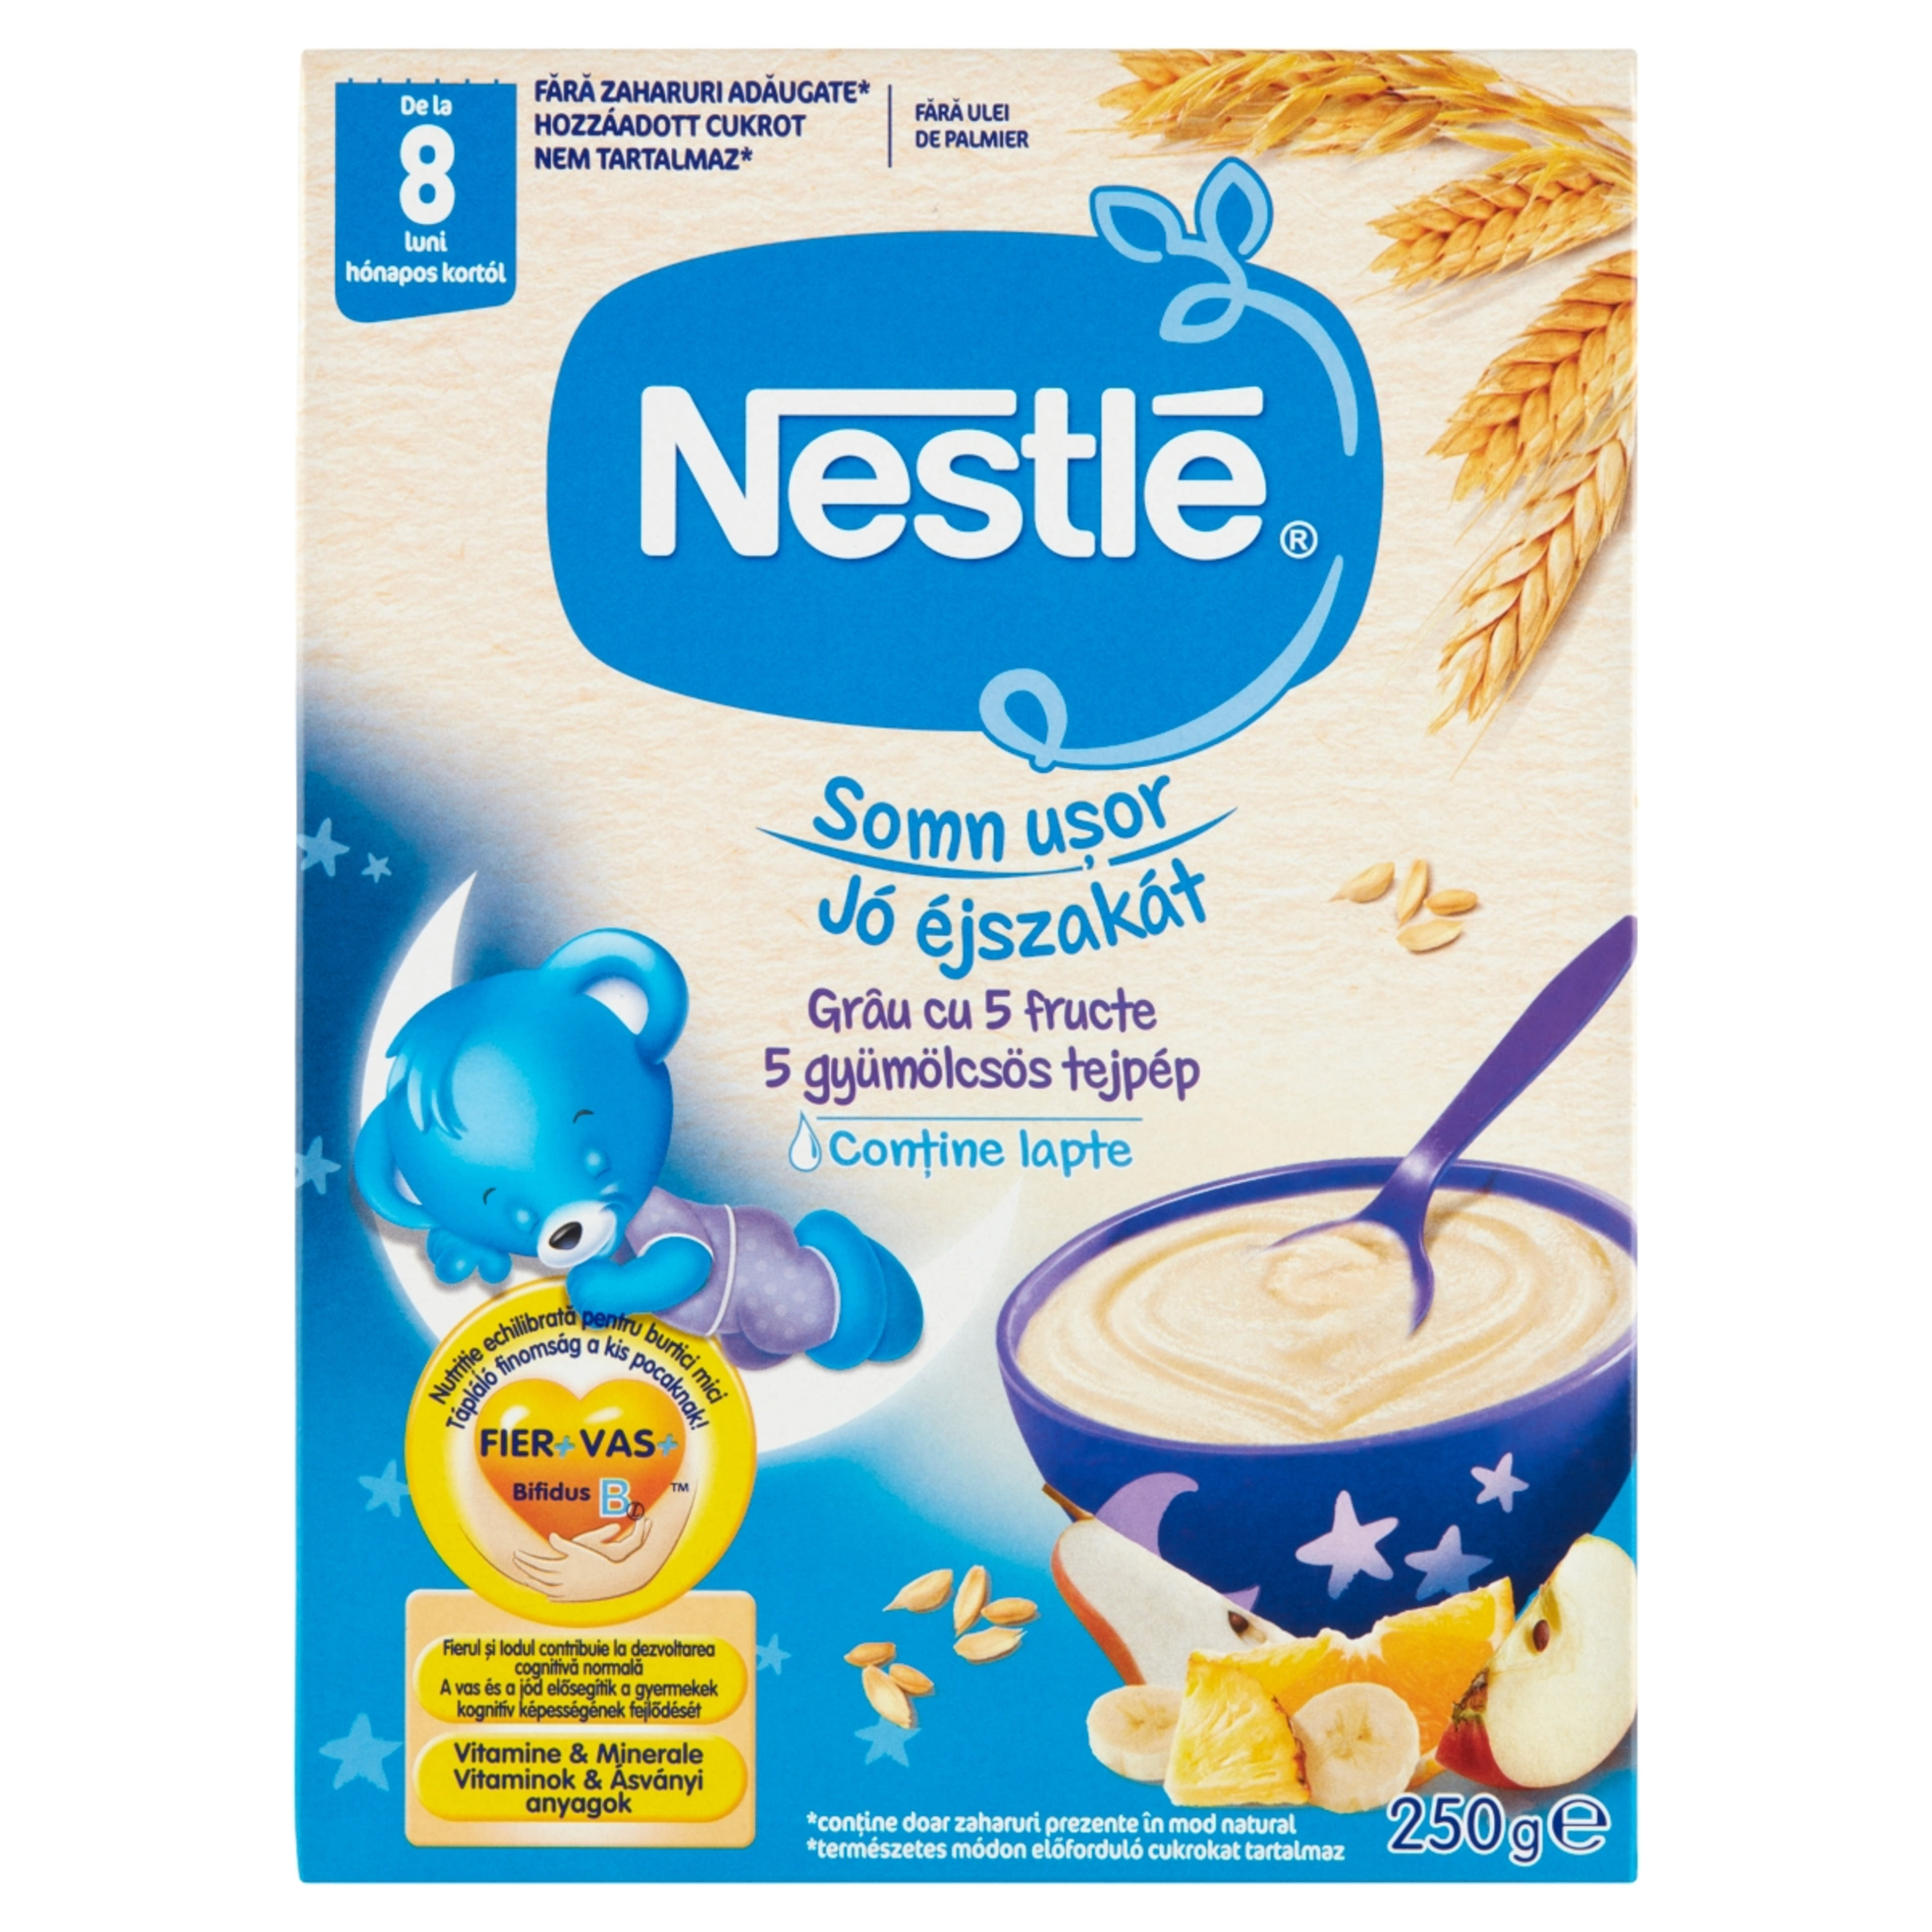 Nestle jó éjszakát 5 gyümölcsös tejpép 8 hónapos kortól - 250 g